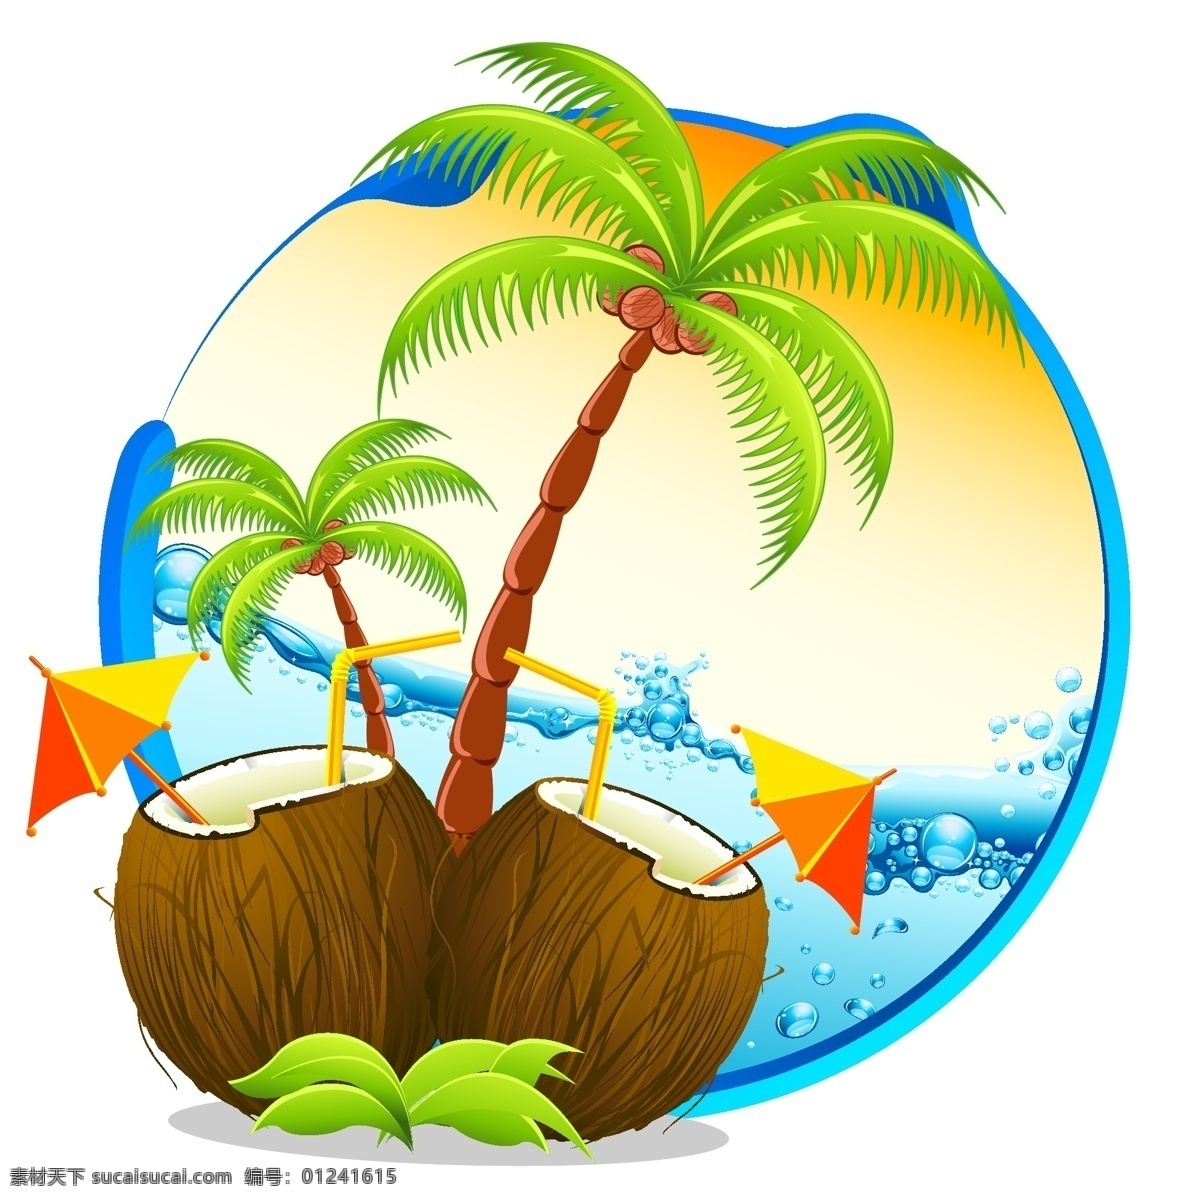 海边风情插画 海边插画 海边风情 热浪插画 插画 椰树 椰子 海水 共享设计矢量